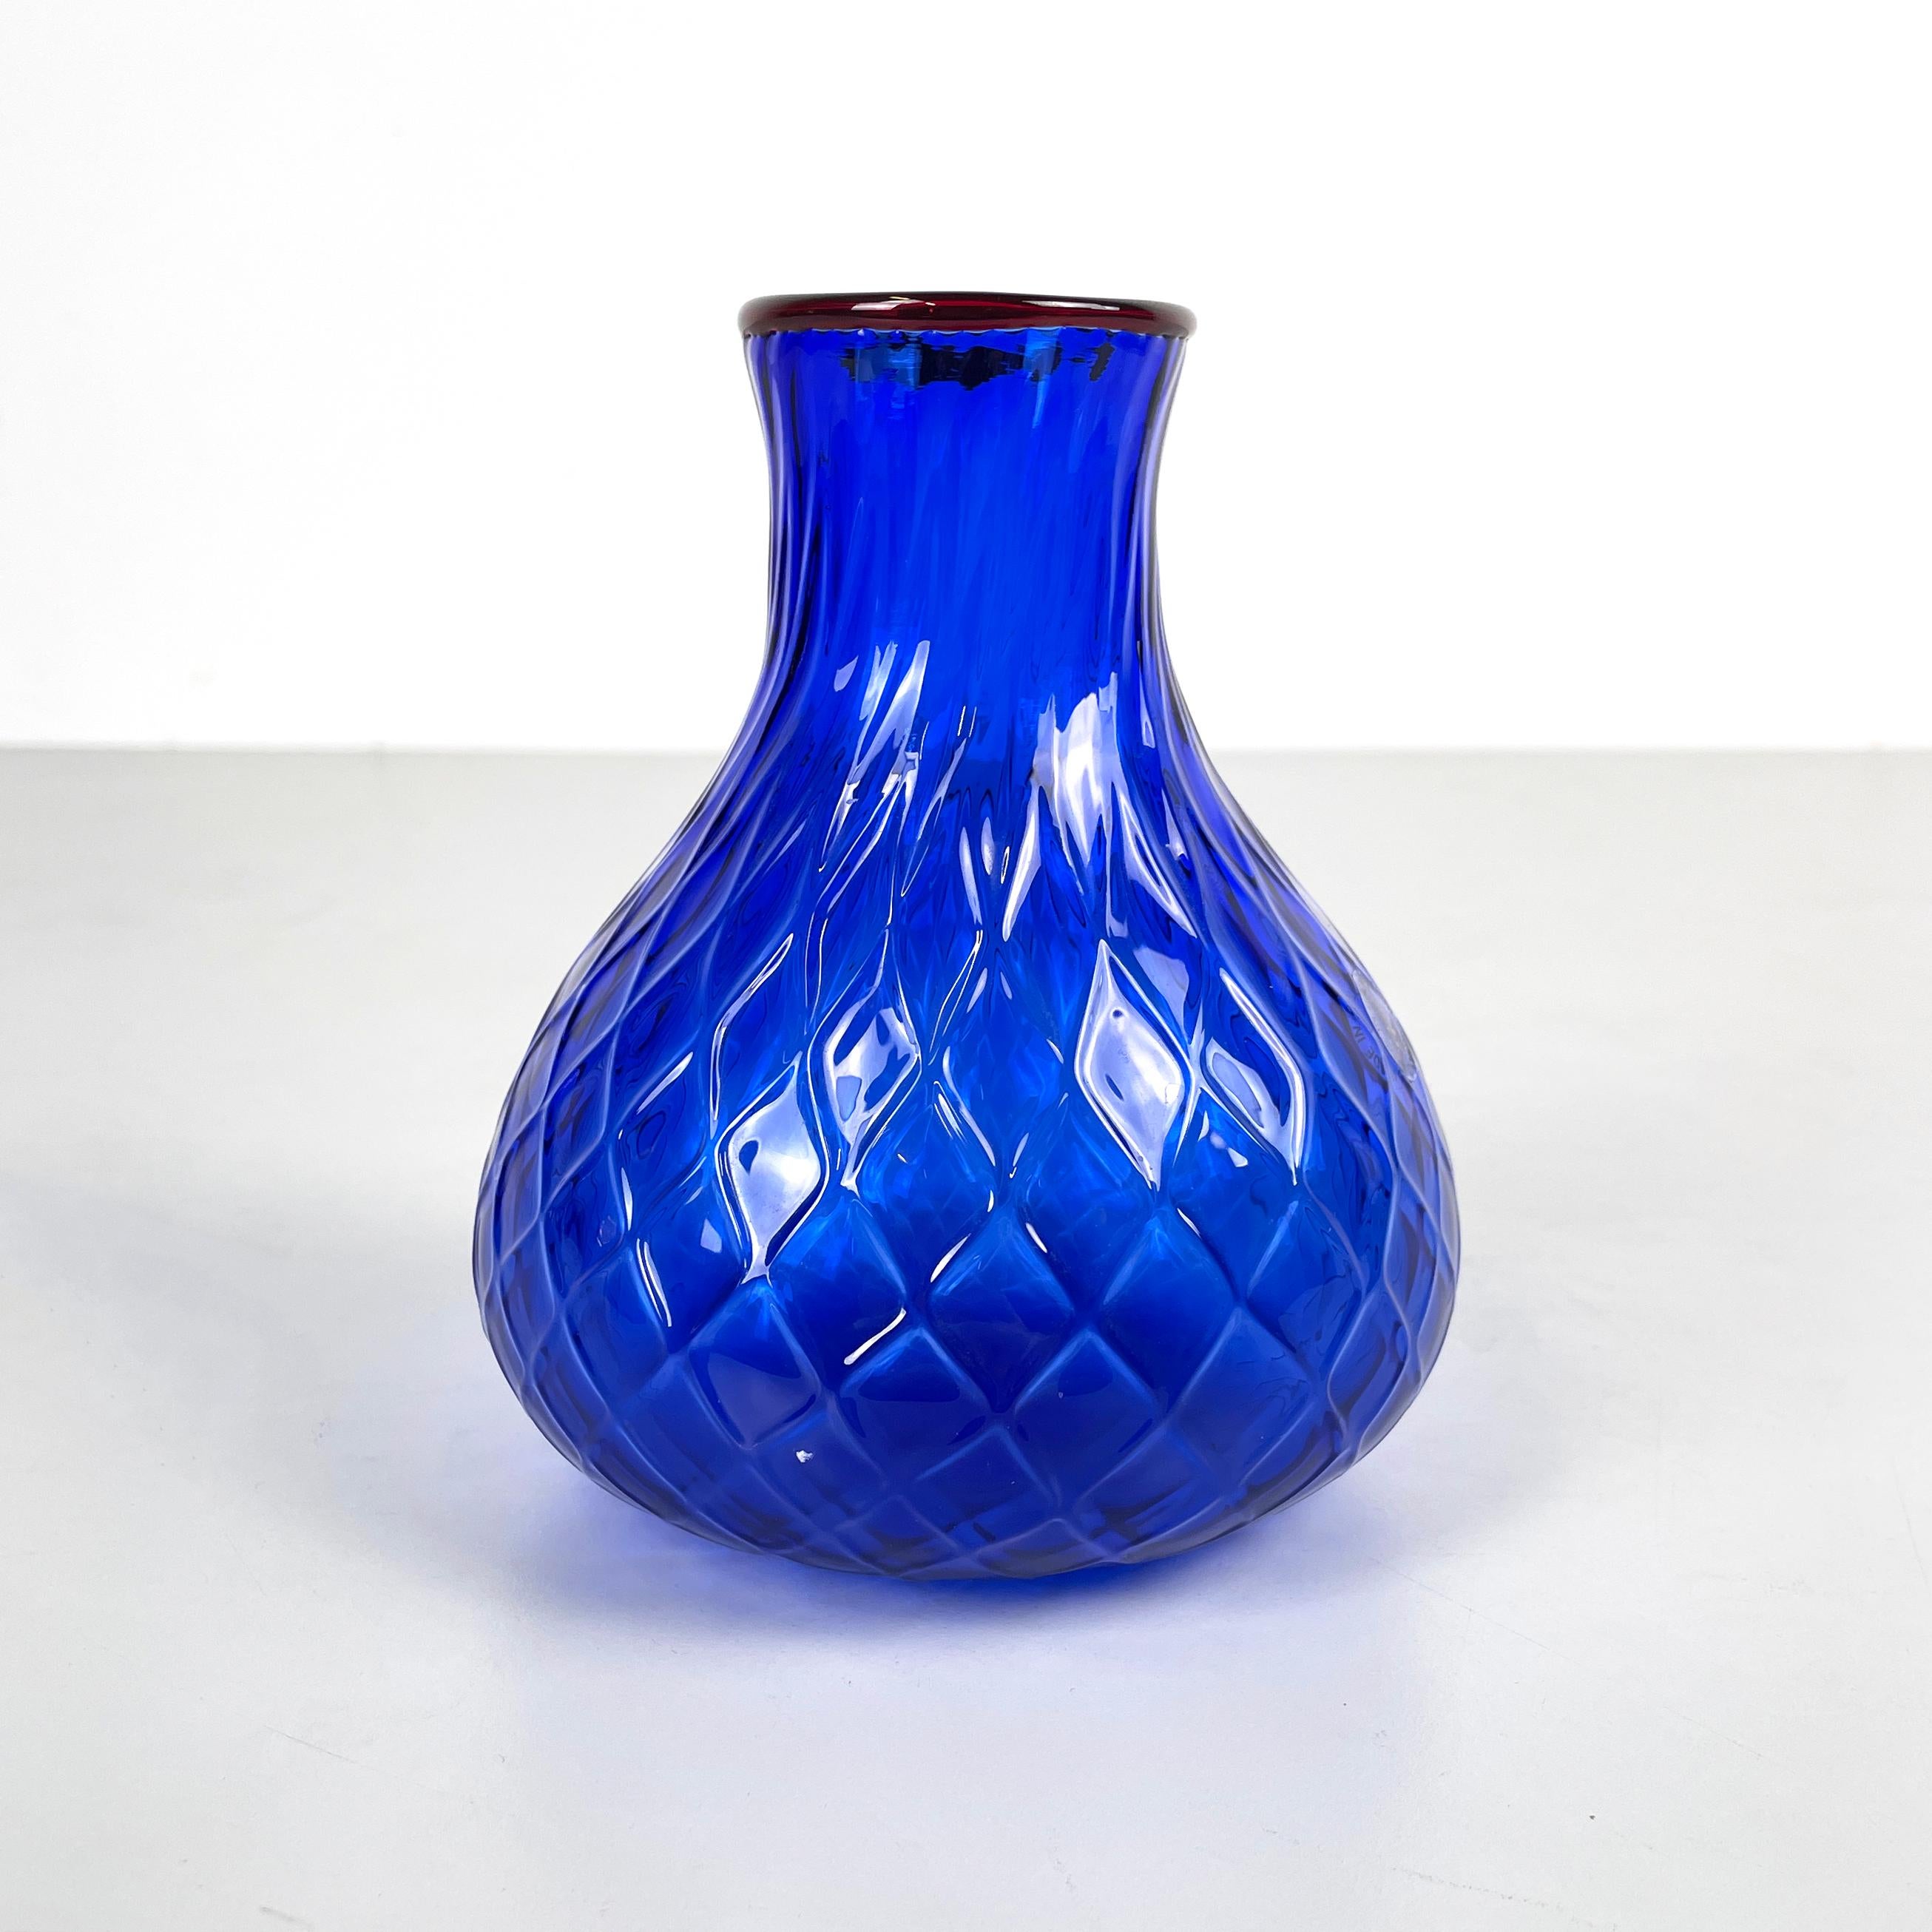 Italienische Moderne Runde Vase aus rotem und blauem Muranoglas von Venini 1990er Jahre
Fantastische runde Bodenvase aus blauem Muranoglas mit Rautenstruktur. Im oberen Teil hat sie ein rundes Loch mit einem roten Glasprofil. Die Struktur wird in